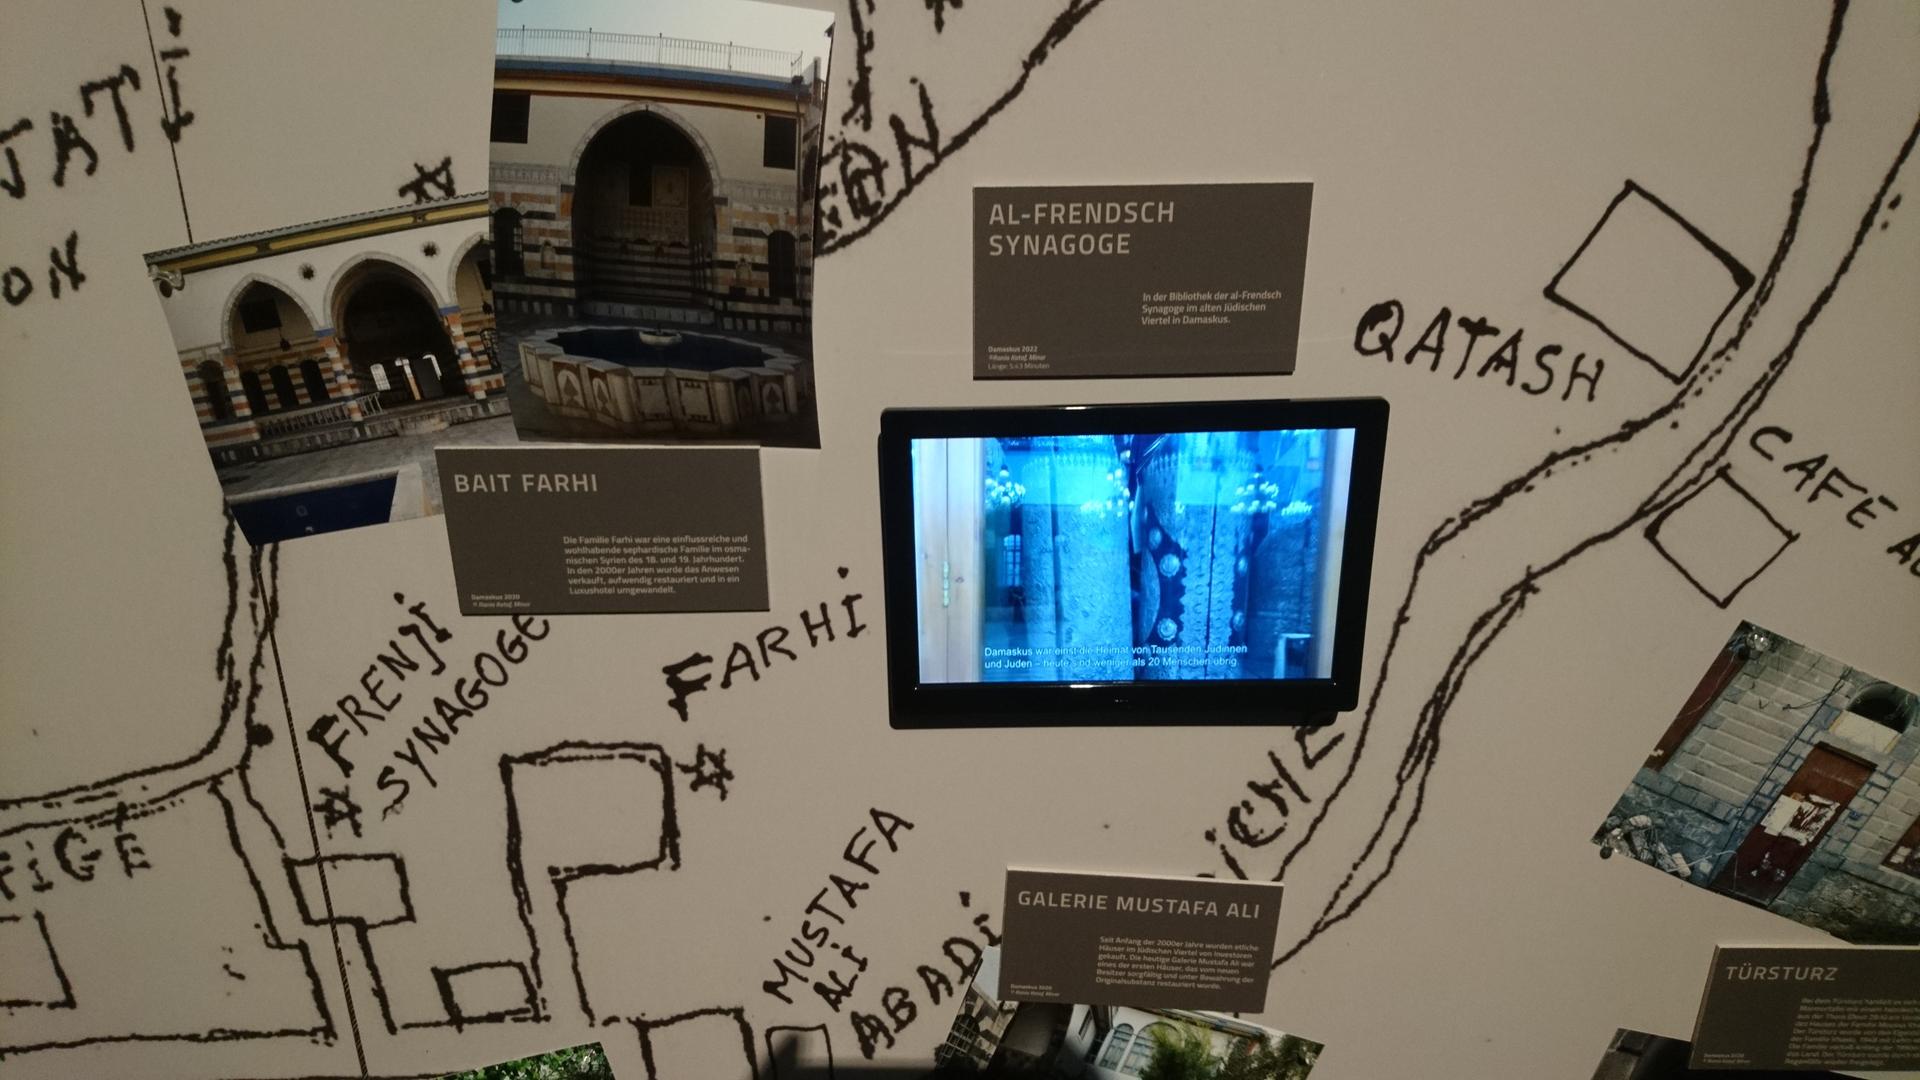 Eine hangezeichnete Karte, ergänzt durch Fotografien und Bildschirme zeigt Orte des jüdischen Lebens.